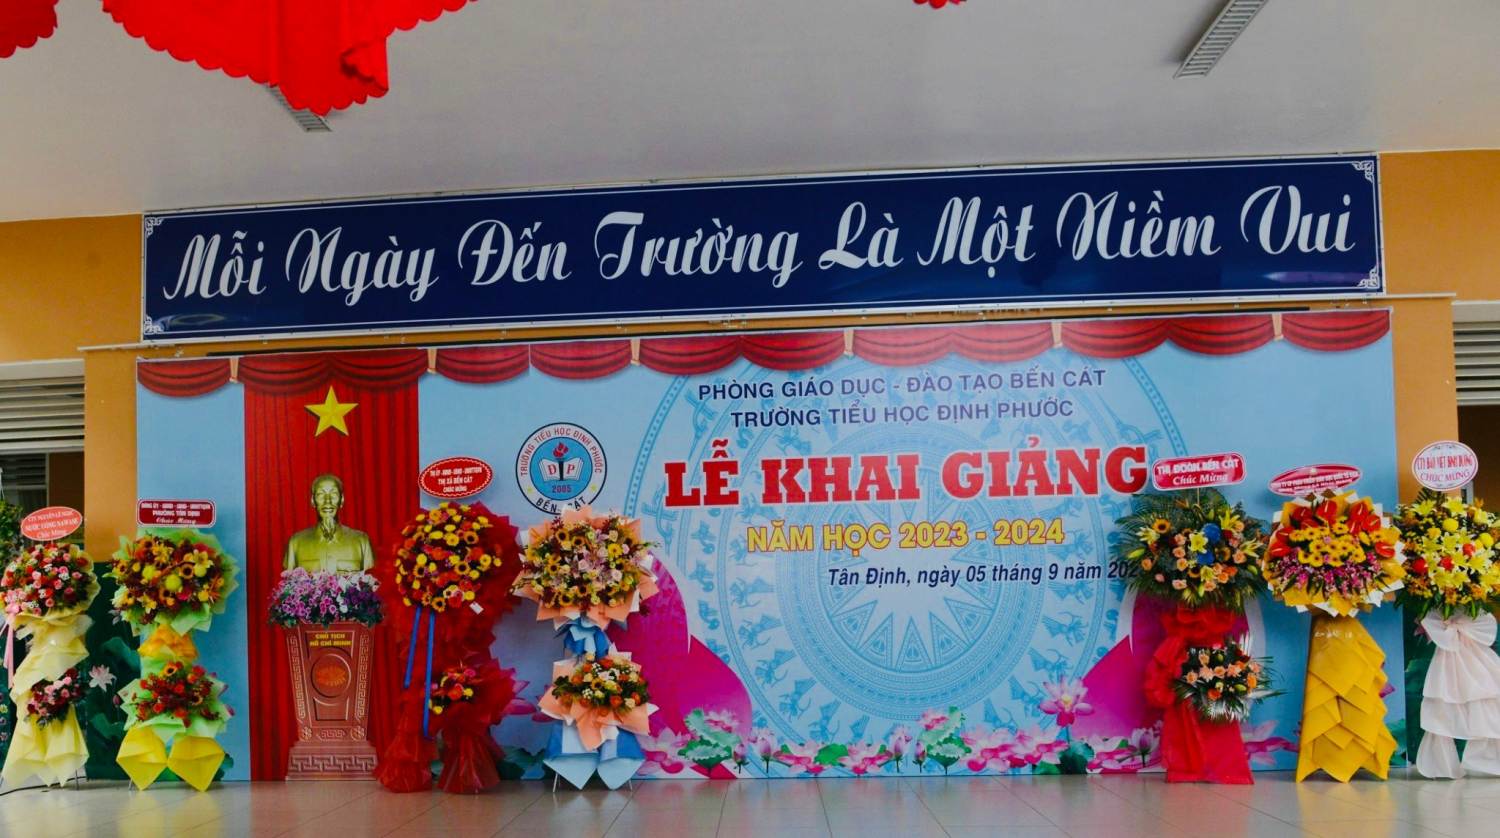 Trường tiểu học Định Phước long trọng tổ chức lễ khai giảng năm học 2023 – 2024